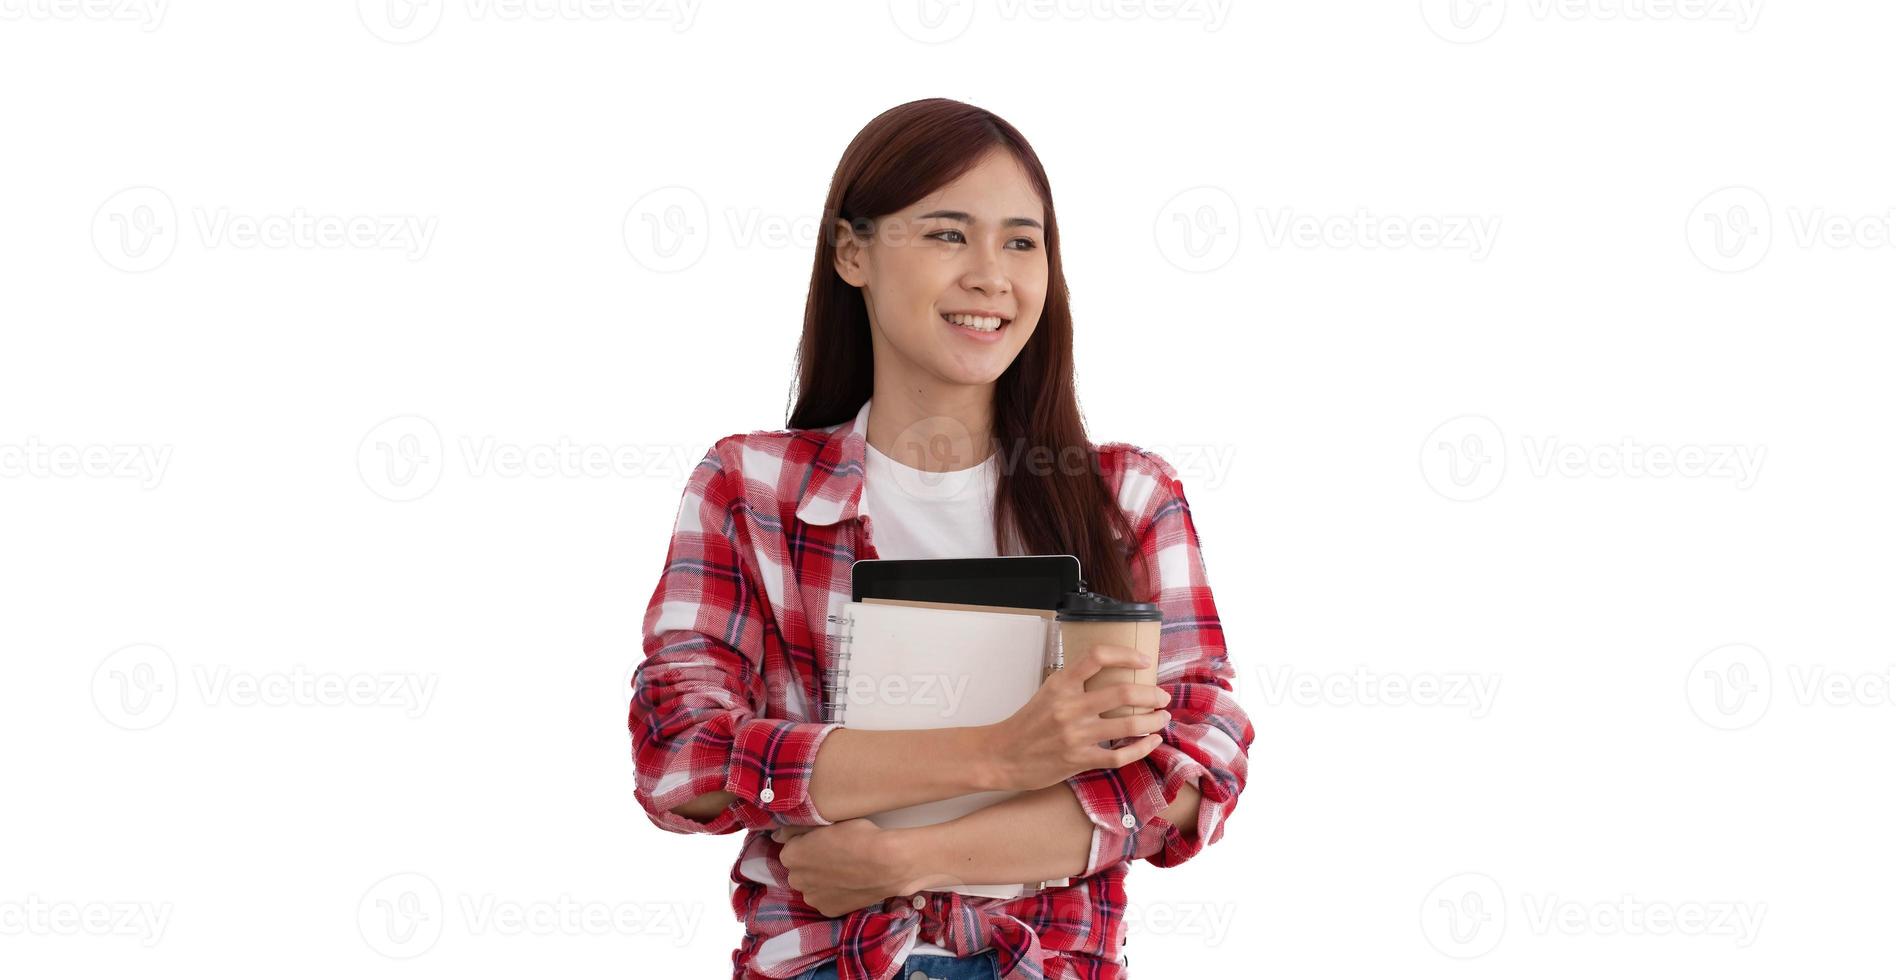 Porträt eines attraktiven jungen asiatischen Universitätsstudenten oder College-Studenten im roten Scott-Hemd, das eine Kaffeetasse, ein Tablet und ein Notizbuch hält, die über weißem Hintergrund stehen foto